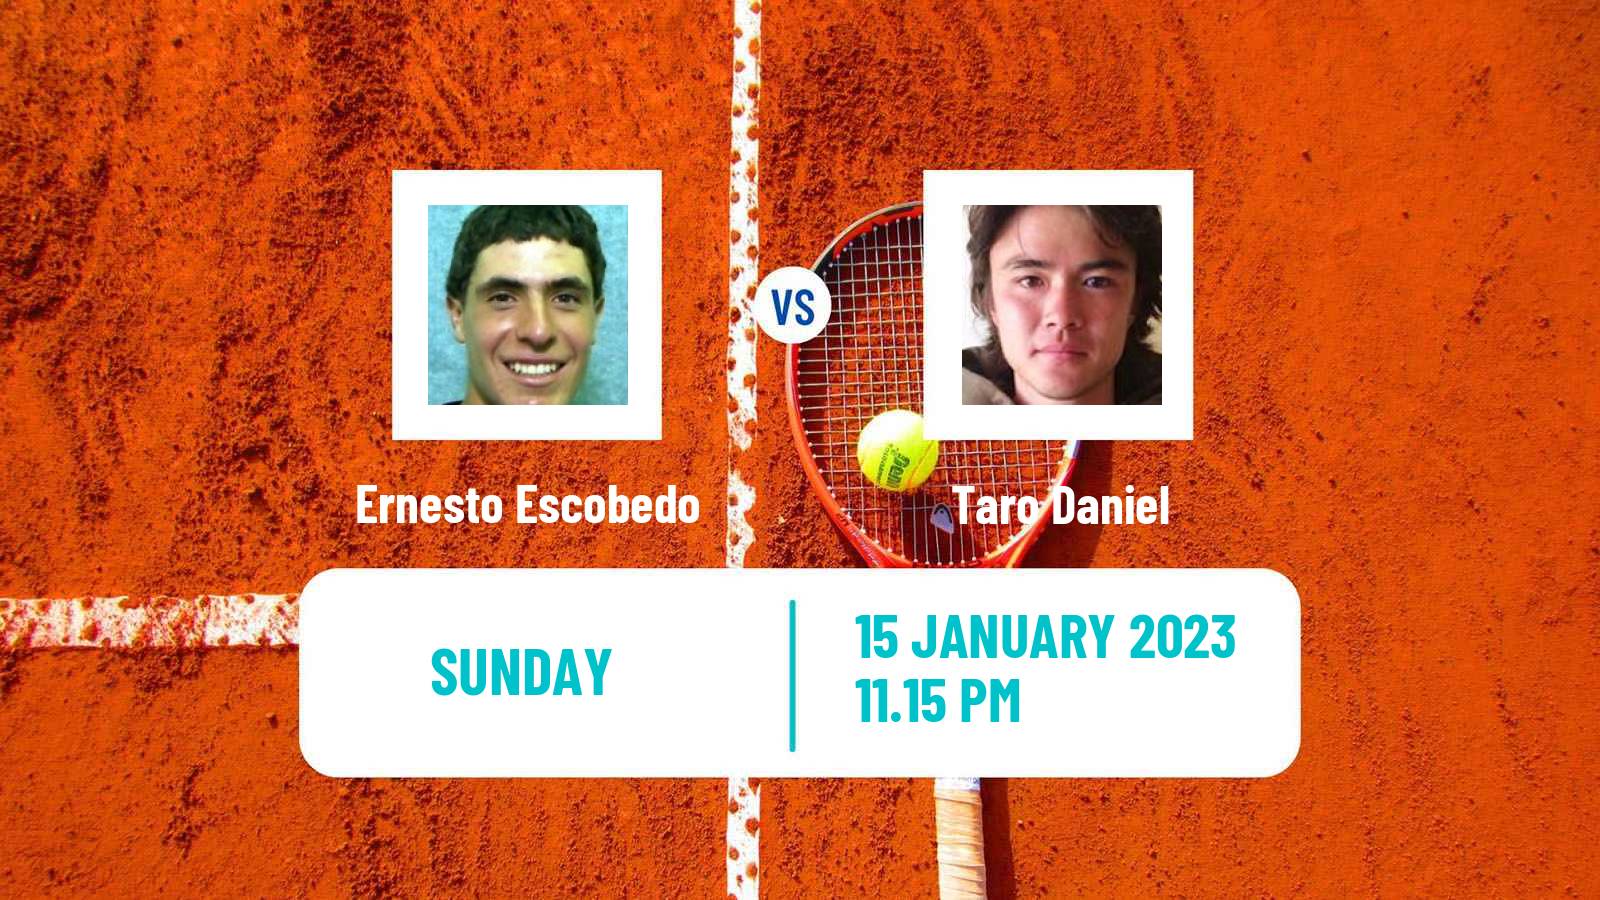 Tennis ATP Australian Open Ernesto Escobedo - Taro Daniel